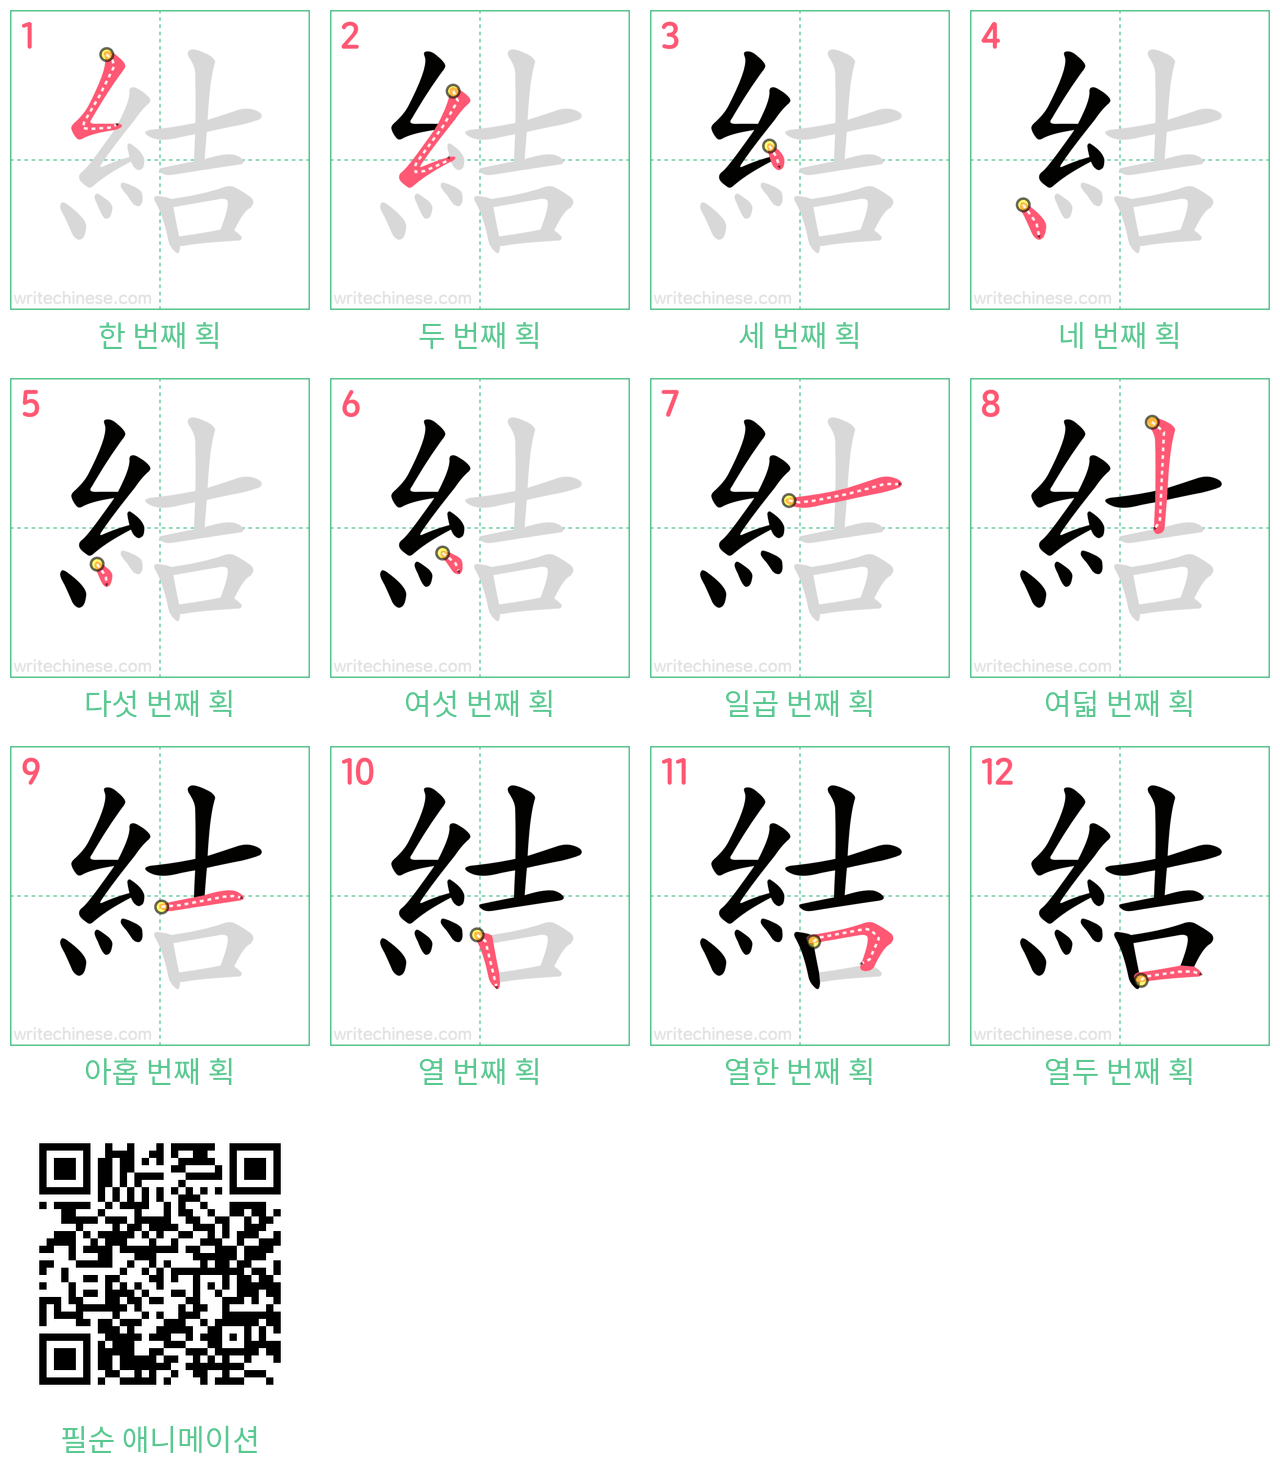 結 step-by-step stroke order diagrams